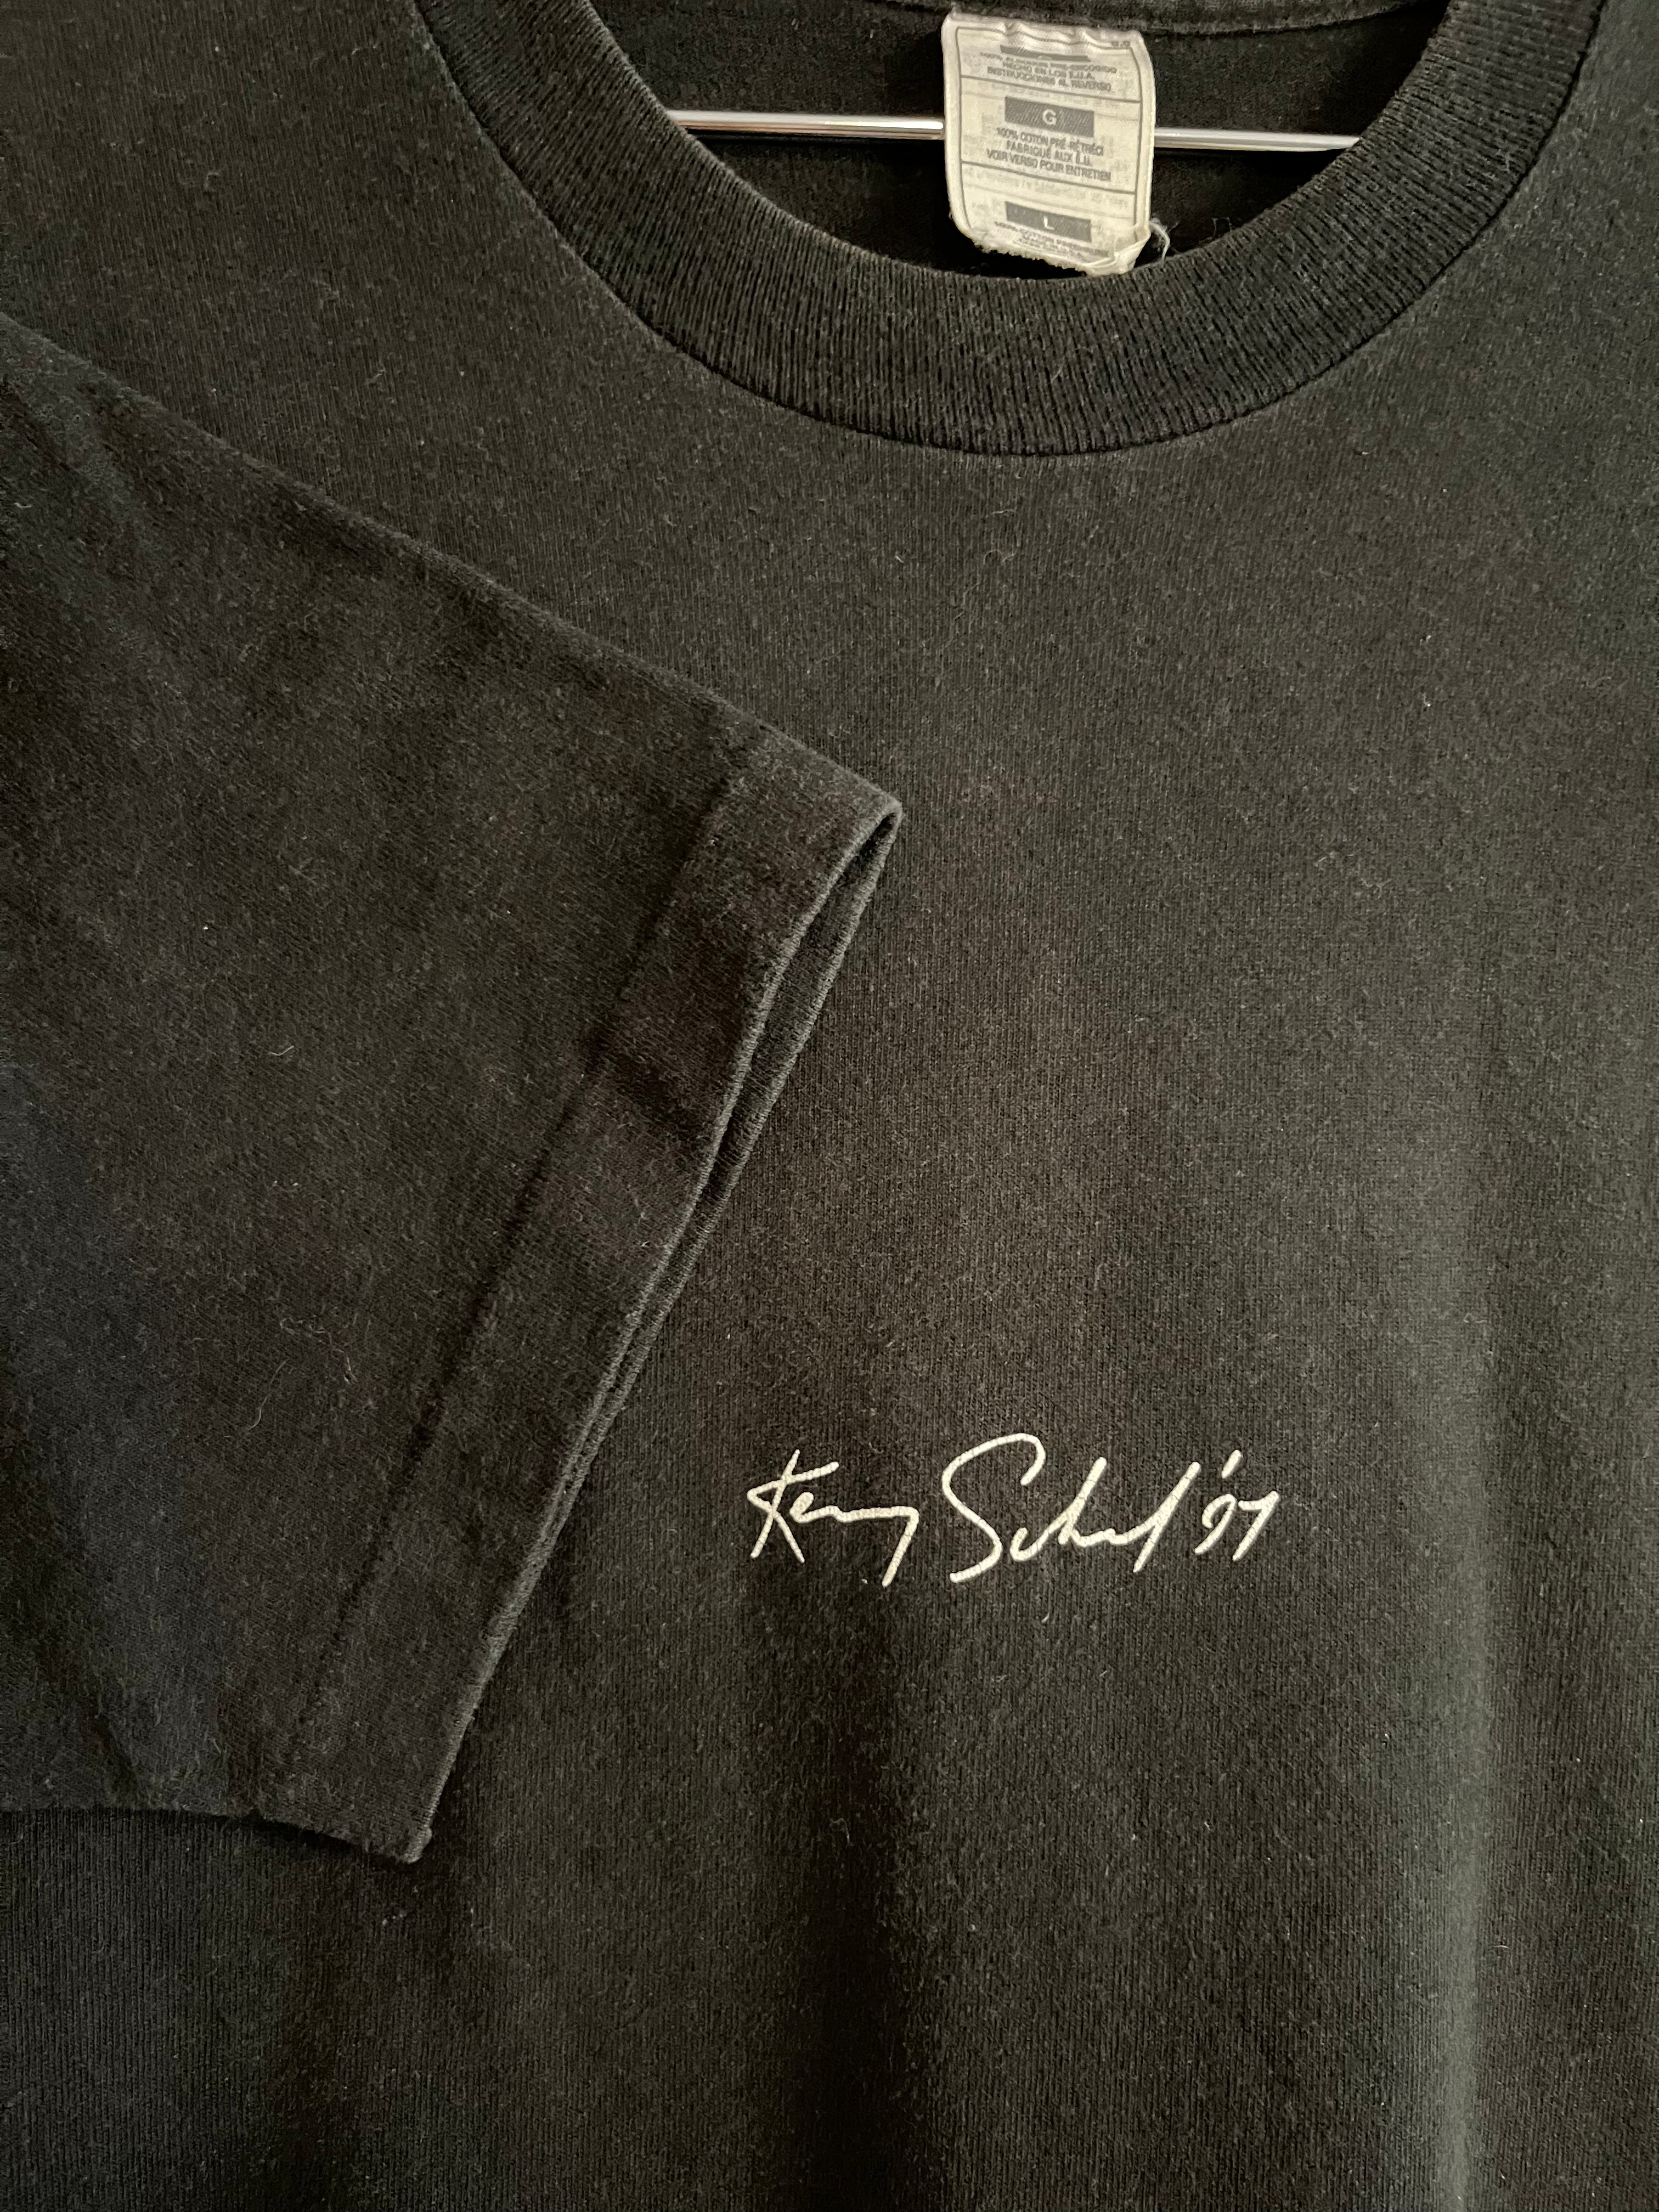 Kenny Scharf 1997 Star Creature T-Shirt - Black - M/L